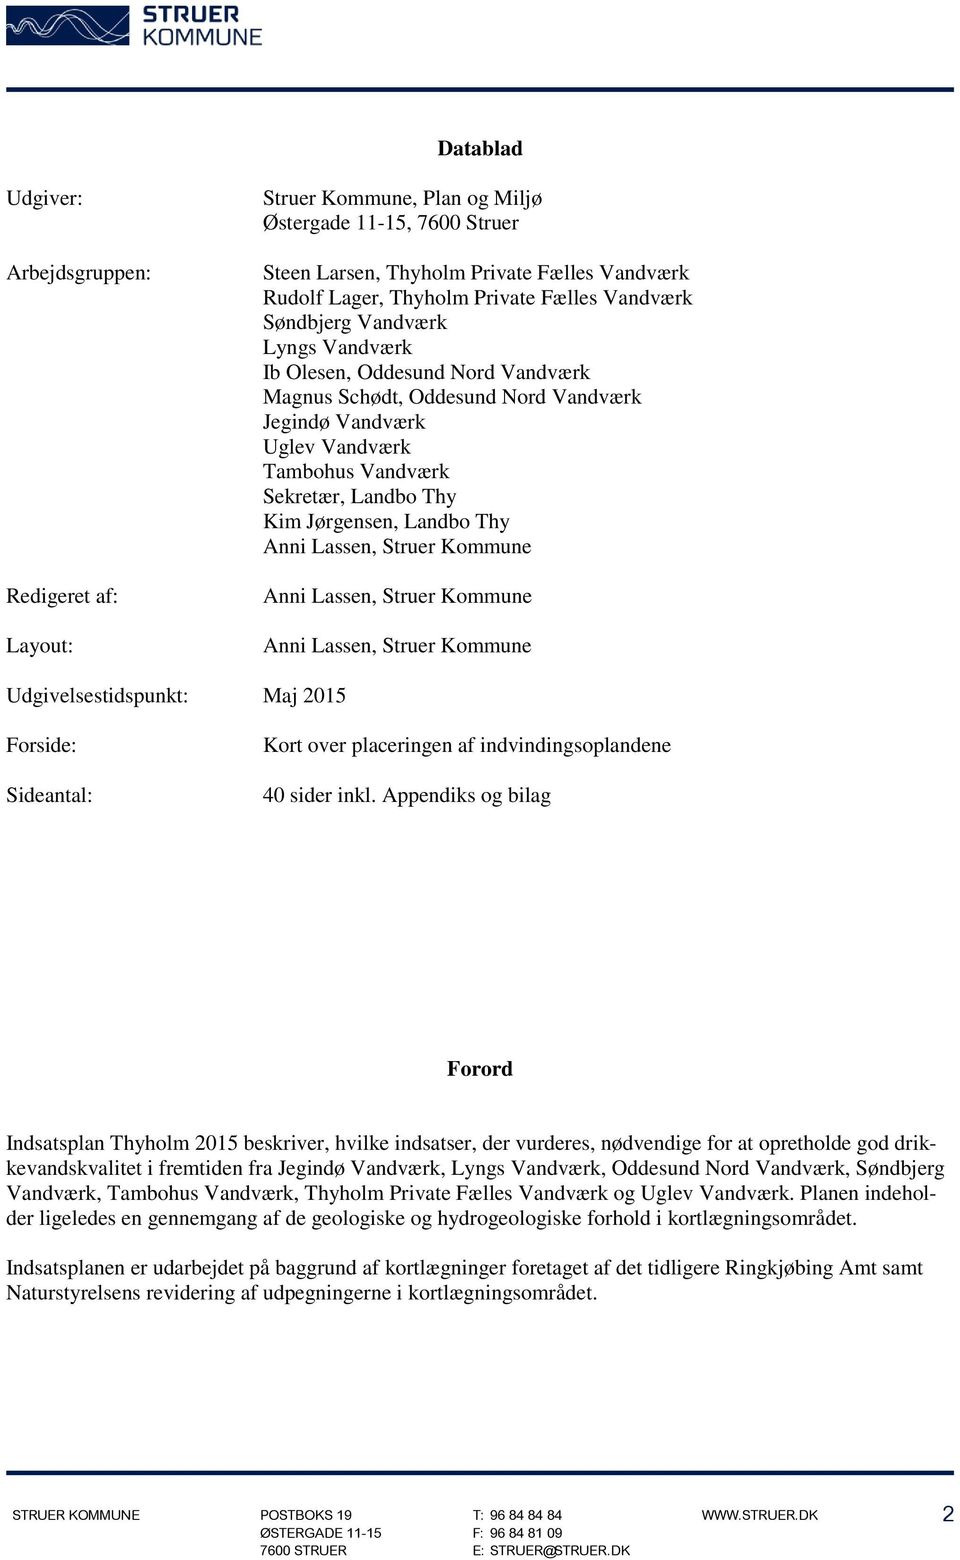 Thy Anni Lassen, Anni Lassen, Anni Lassen, Udgivelsestidspunkt: Maj 2015 Forside: Sideantal: Kort over placeringen af indvindingsoplandene 40 sider inkl.